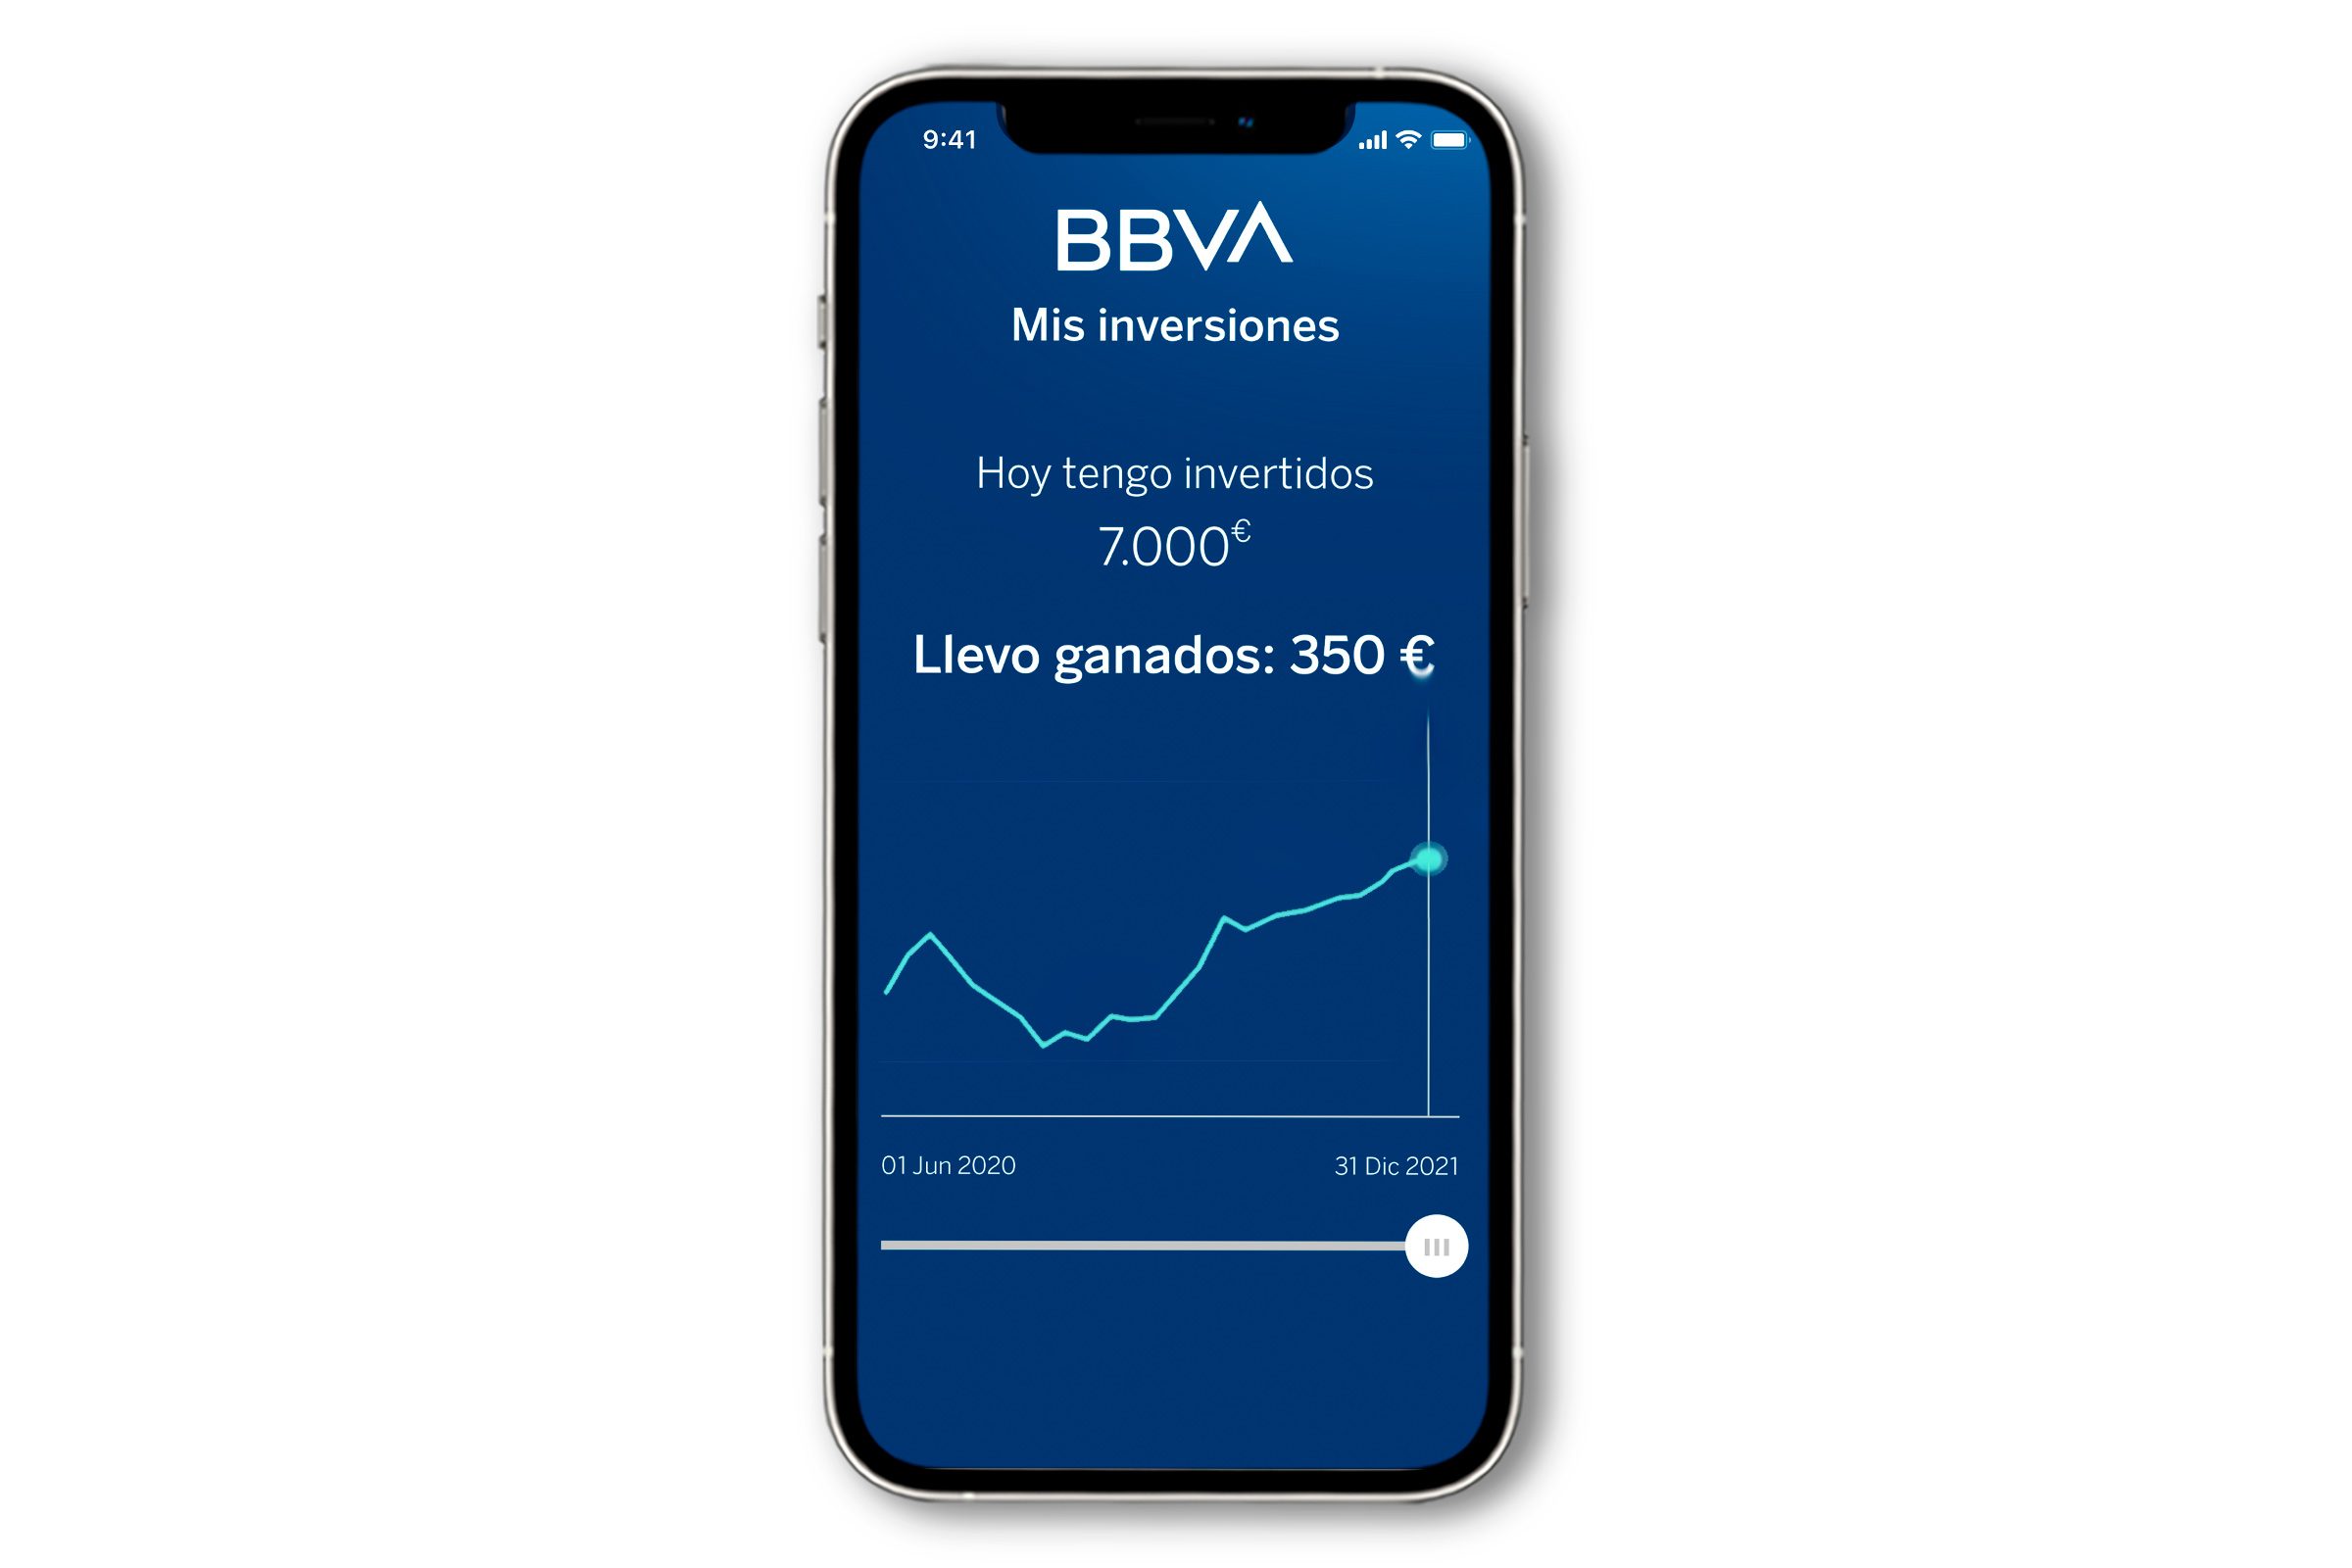 Imagen de Mis Inversiones dentro de la app BBVA